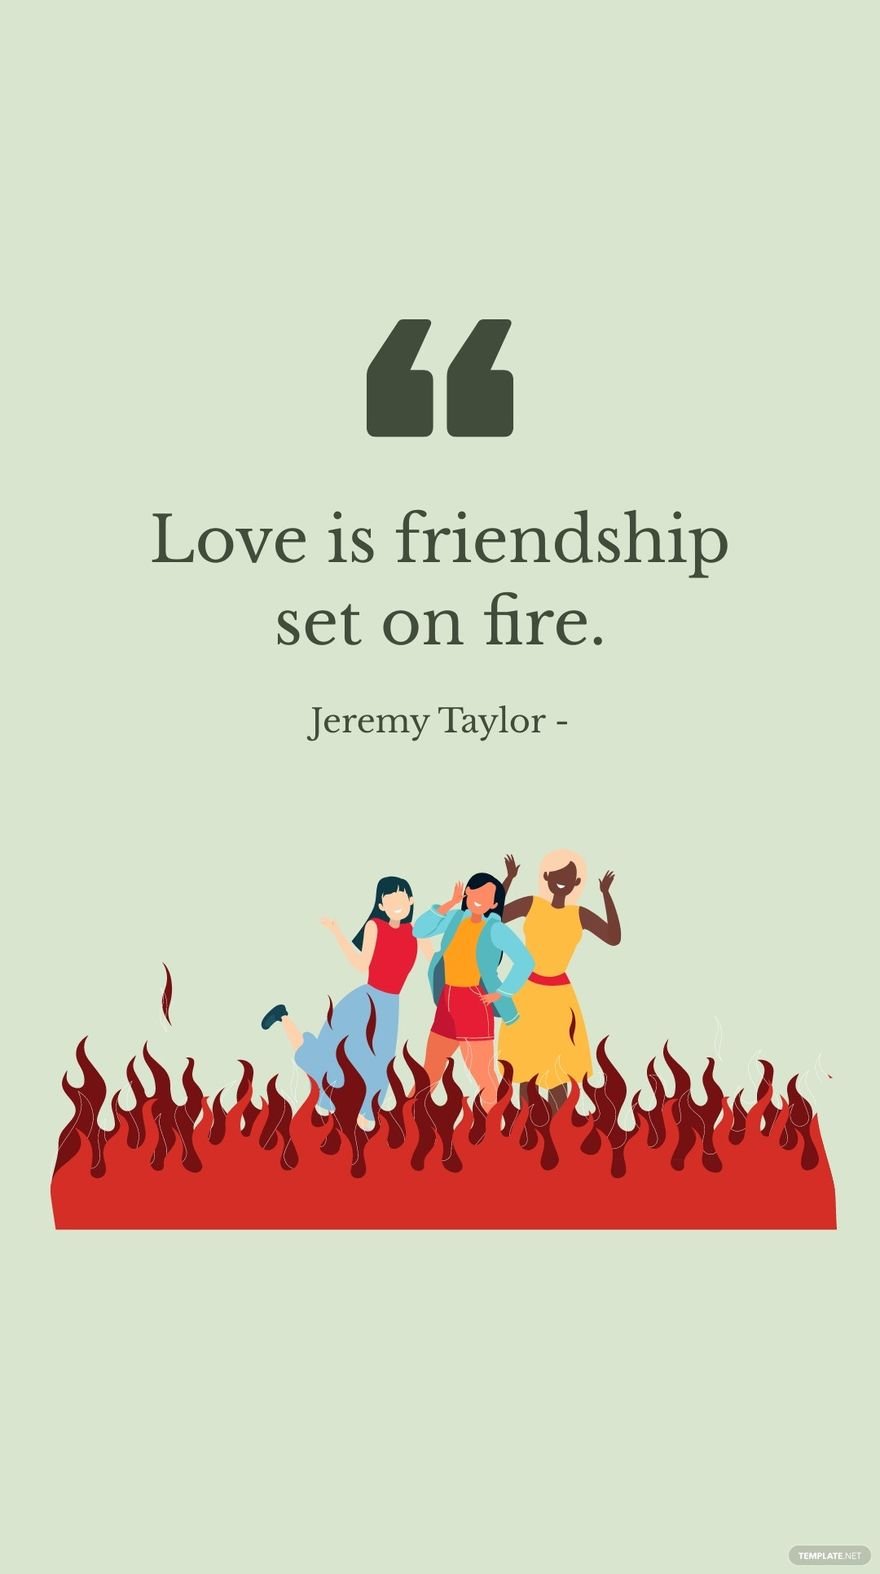 Free Jeremy Taylor - Love is friendship set on fire. in JPG